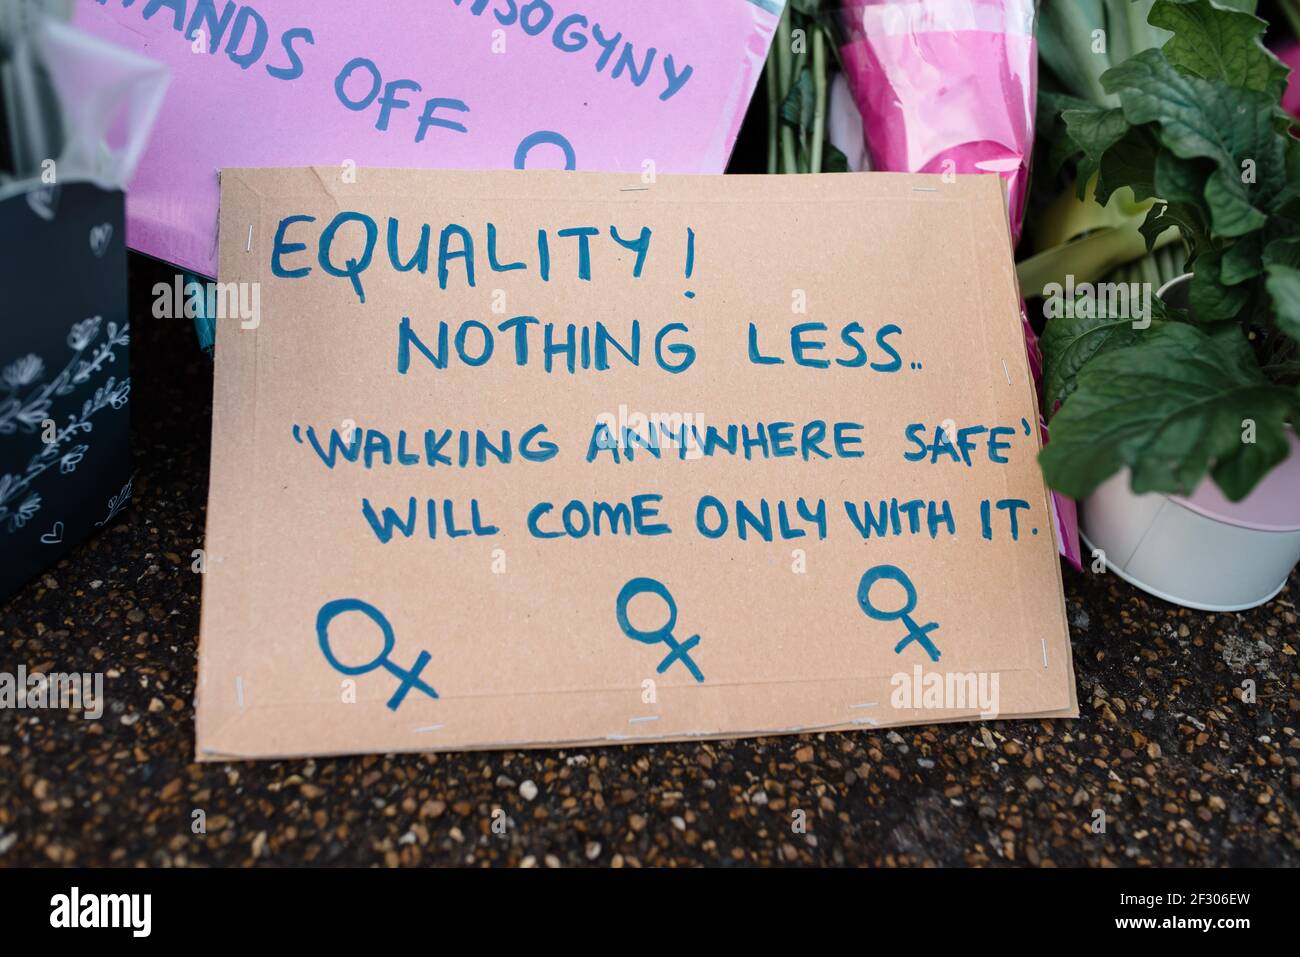 Londres, Royaume-Uni - 13 mars 2021 : veillée pour pleurer Sarah Everard tuant et protestant contre la violence sexuelle. L'égalité rien de moins. Banque D'Images